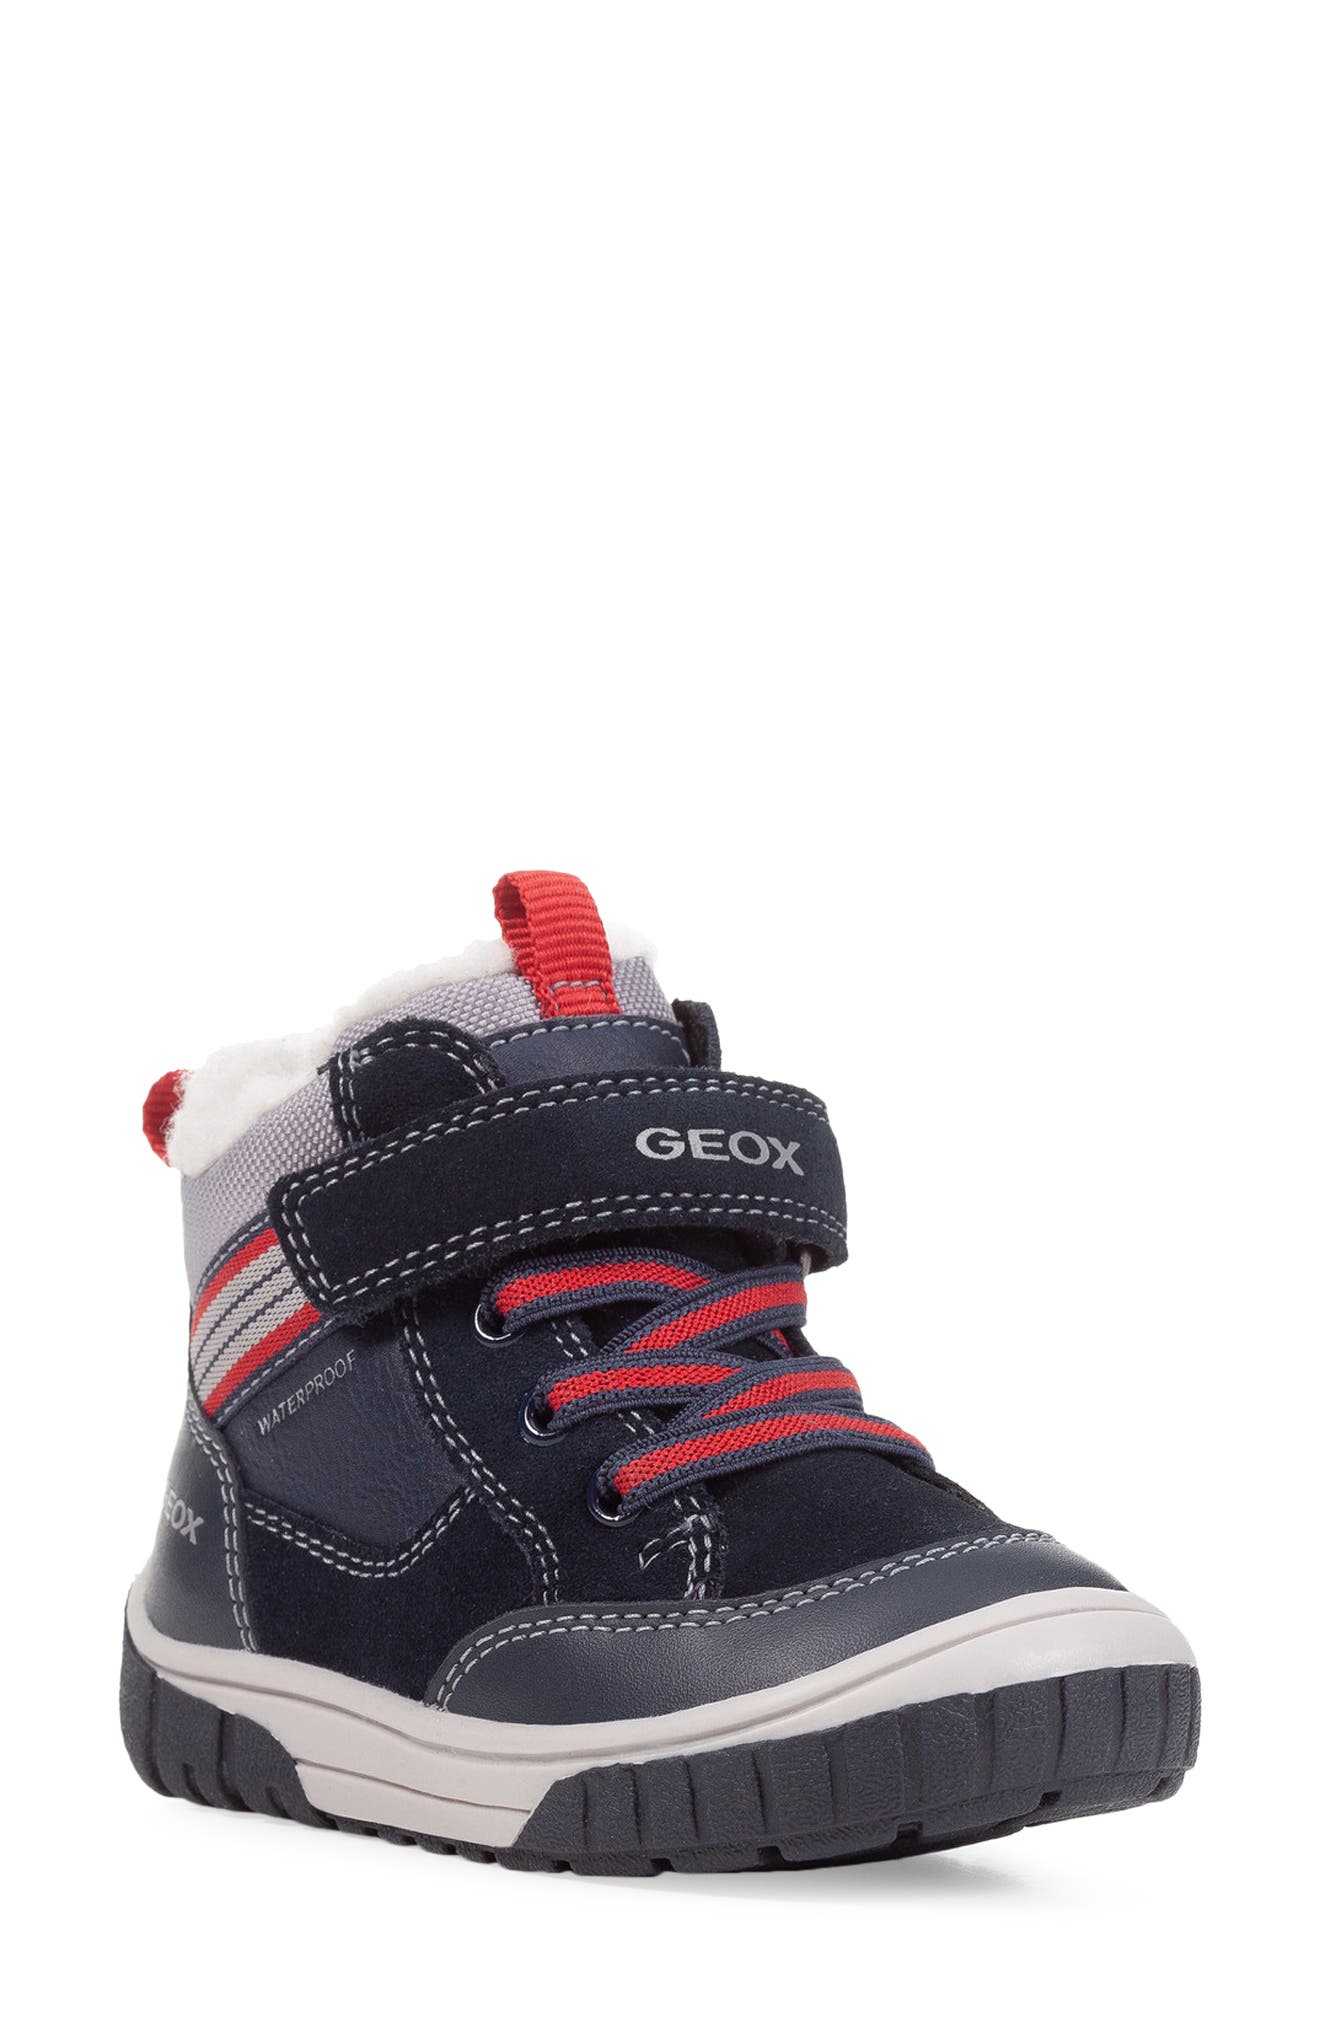 Geox Baby Boys B Omar B Low-Top Sneakers 